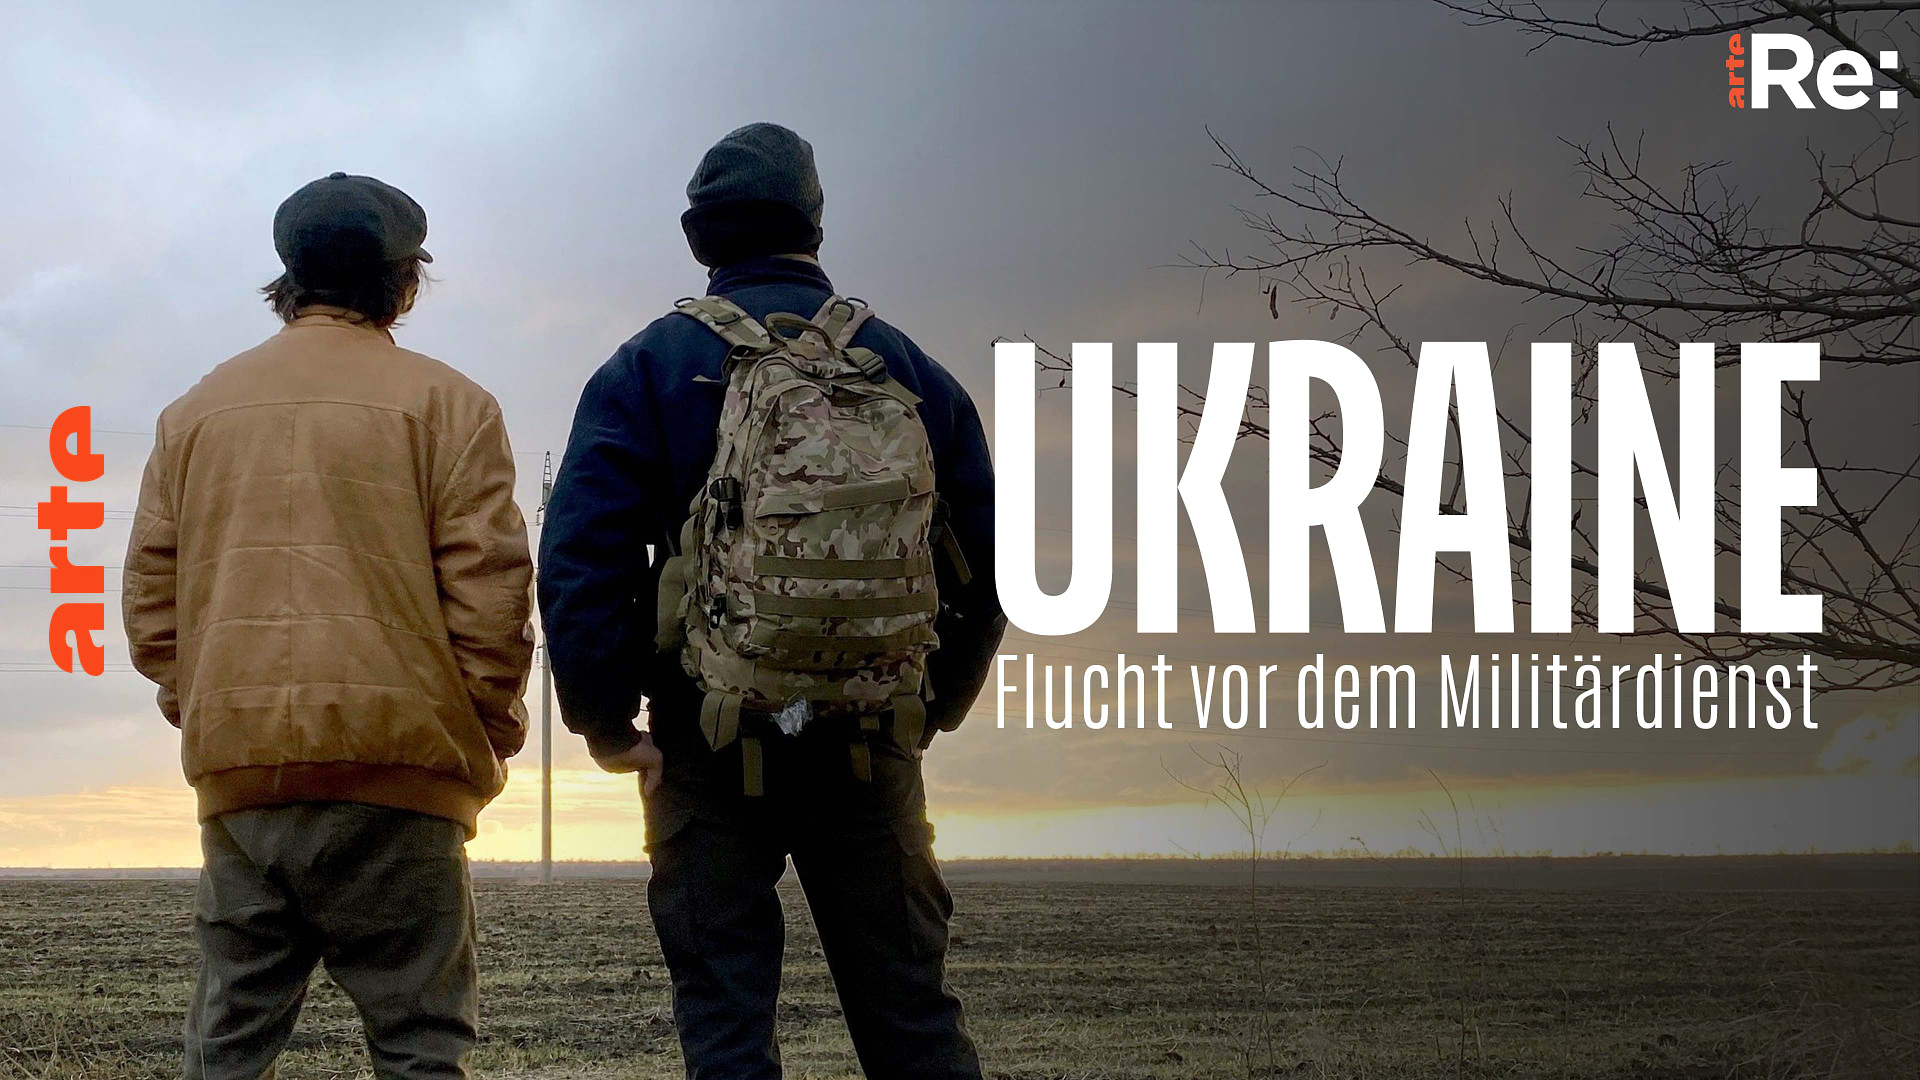 Re: Ukrainer auf der Flucht vor dem Militärdienst